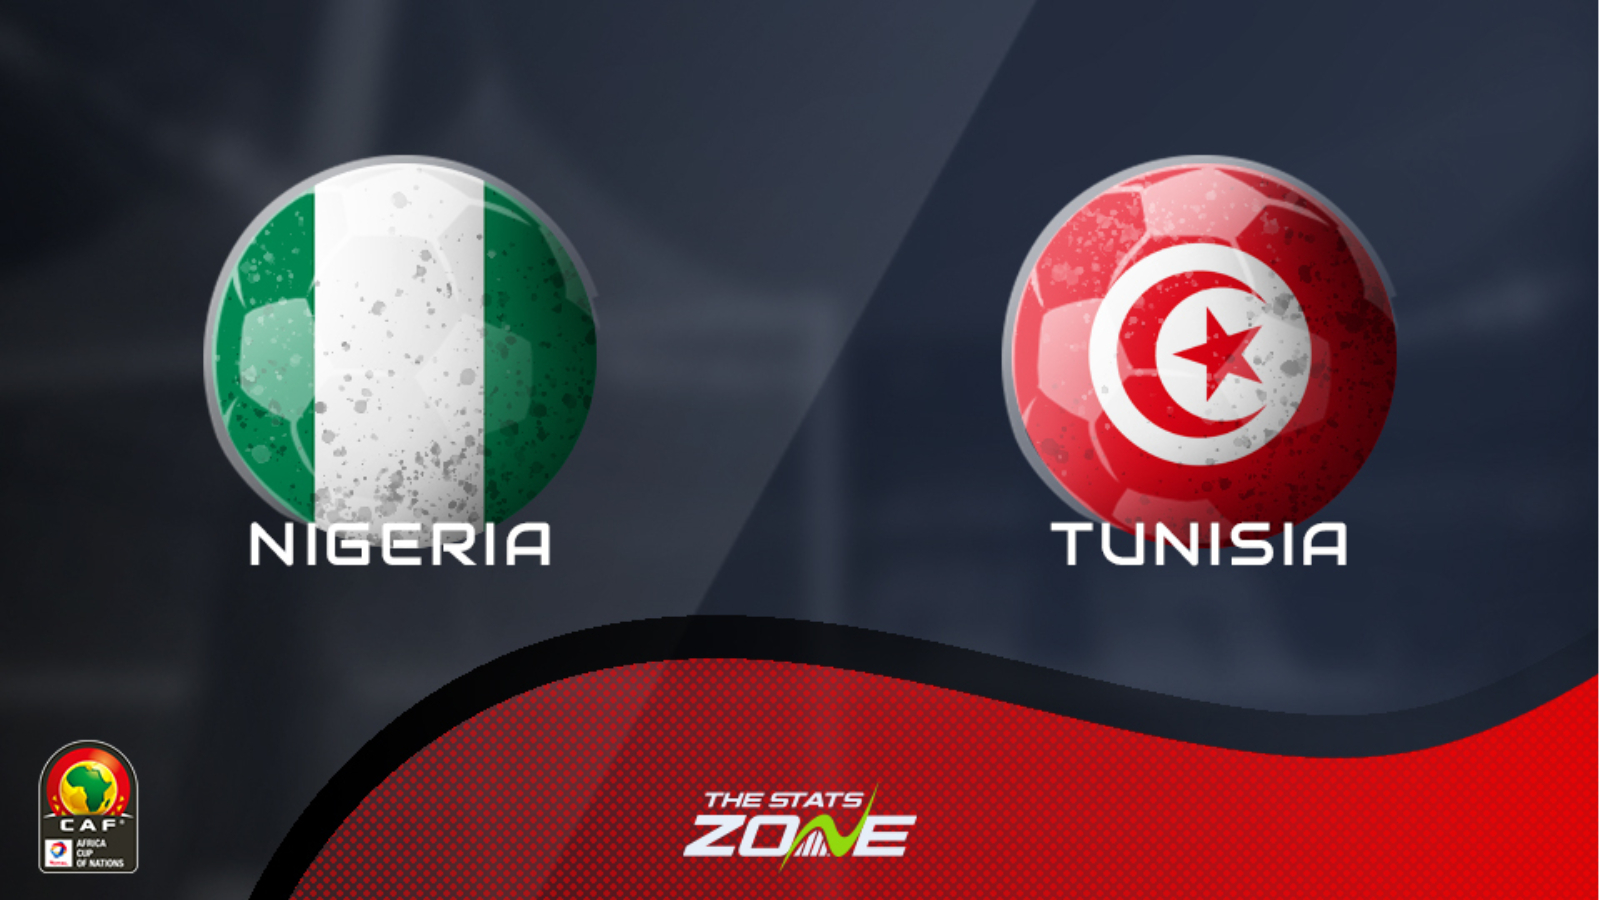 Nigeria vs tunisia